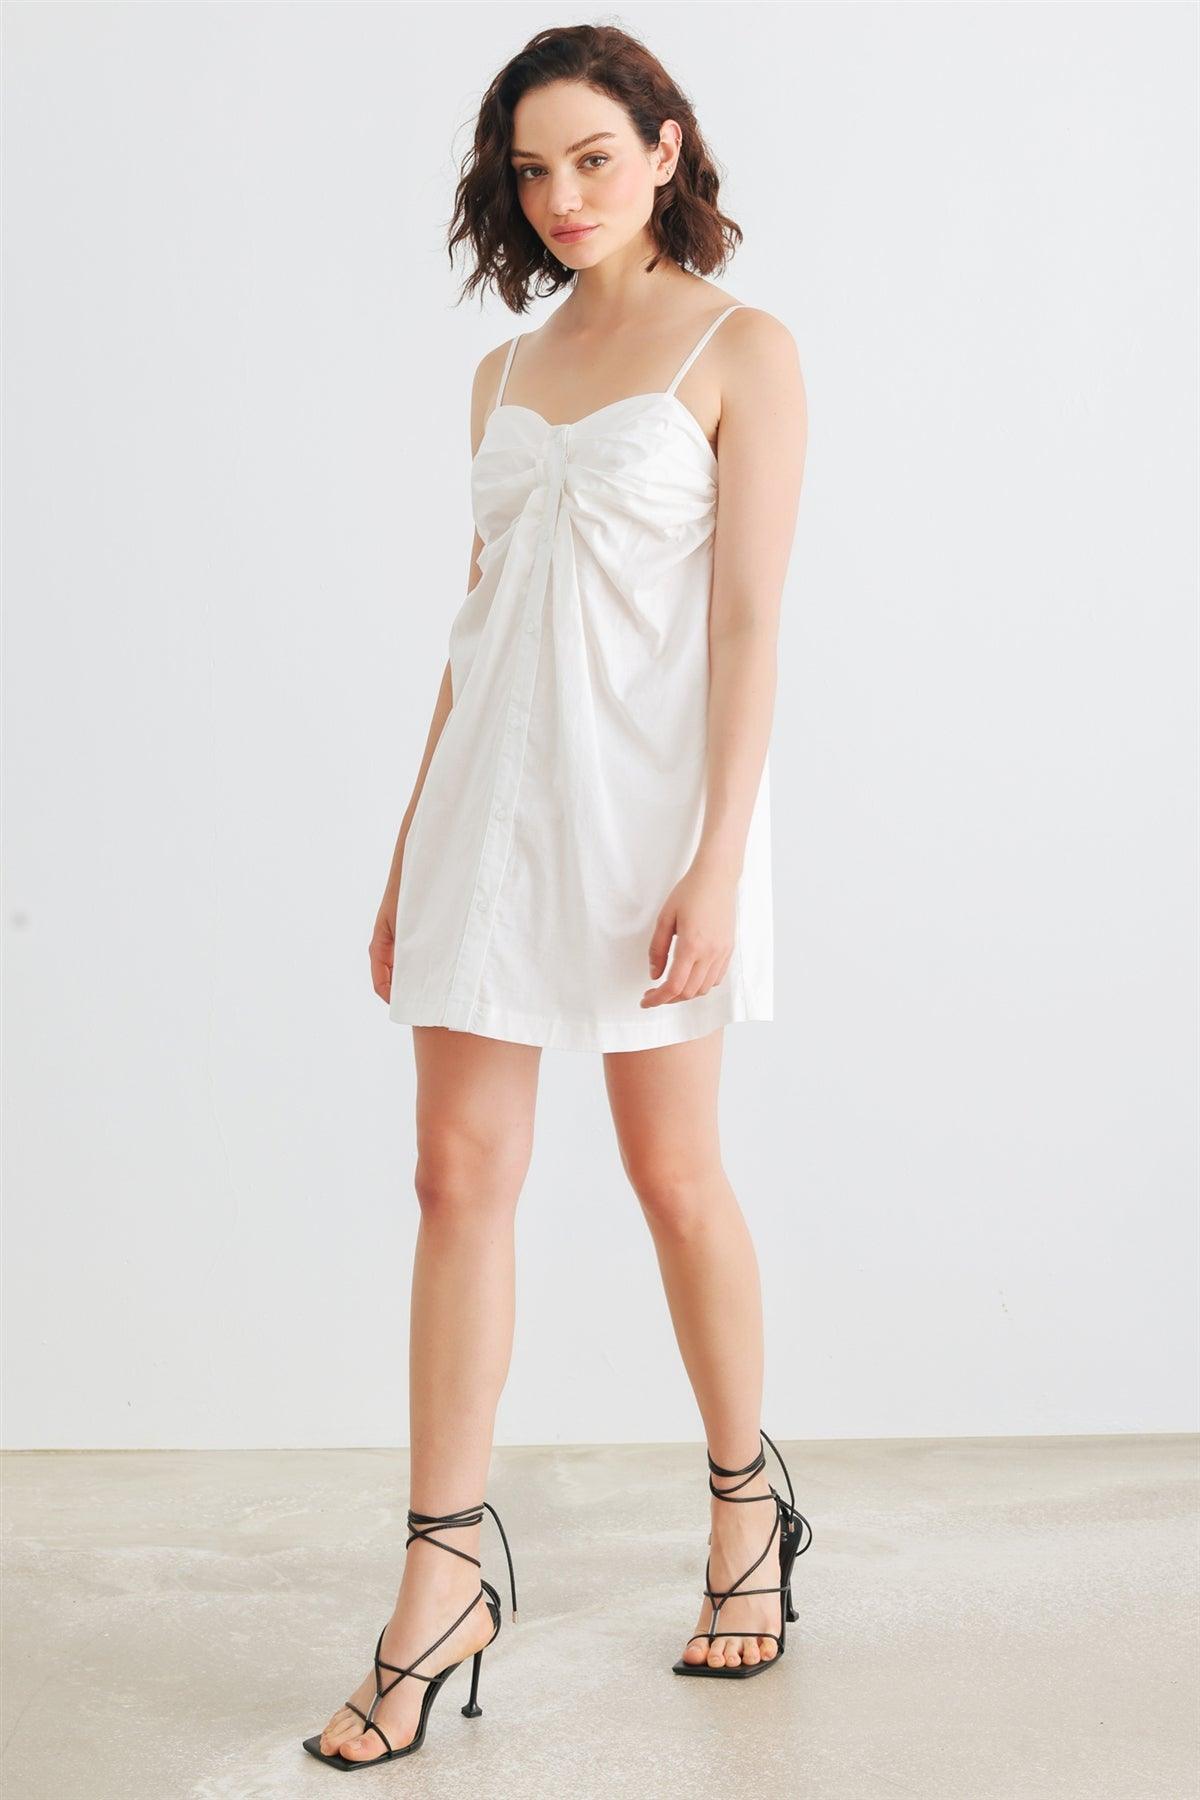 White Cotton Sleeveless Button-Up Strappy Mini Dress /1-2-2-1